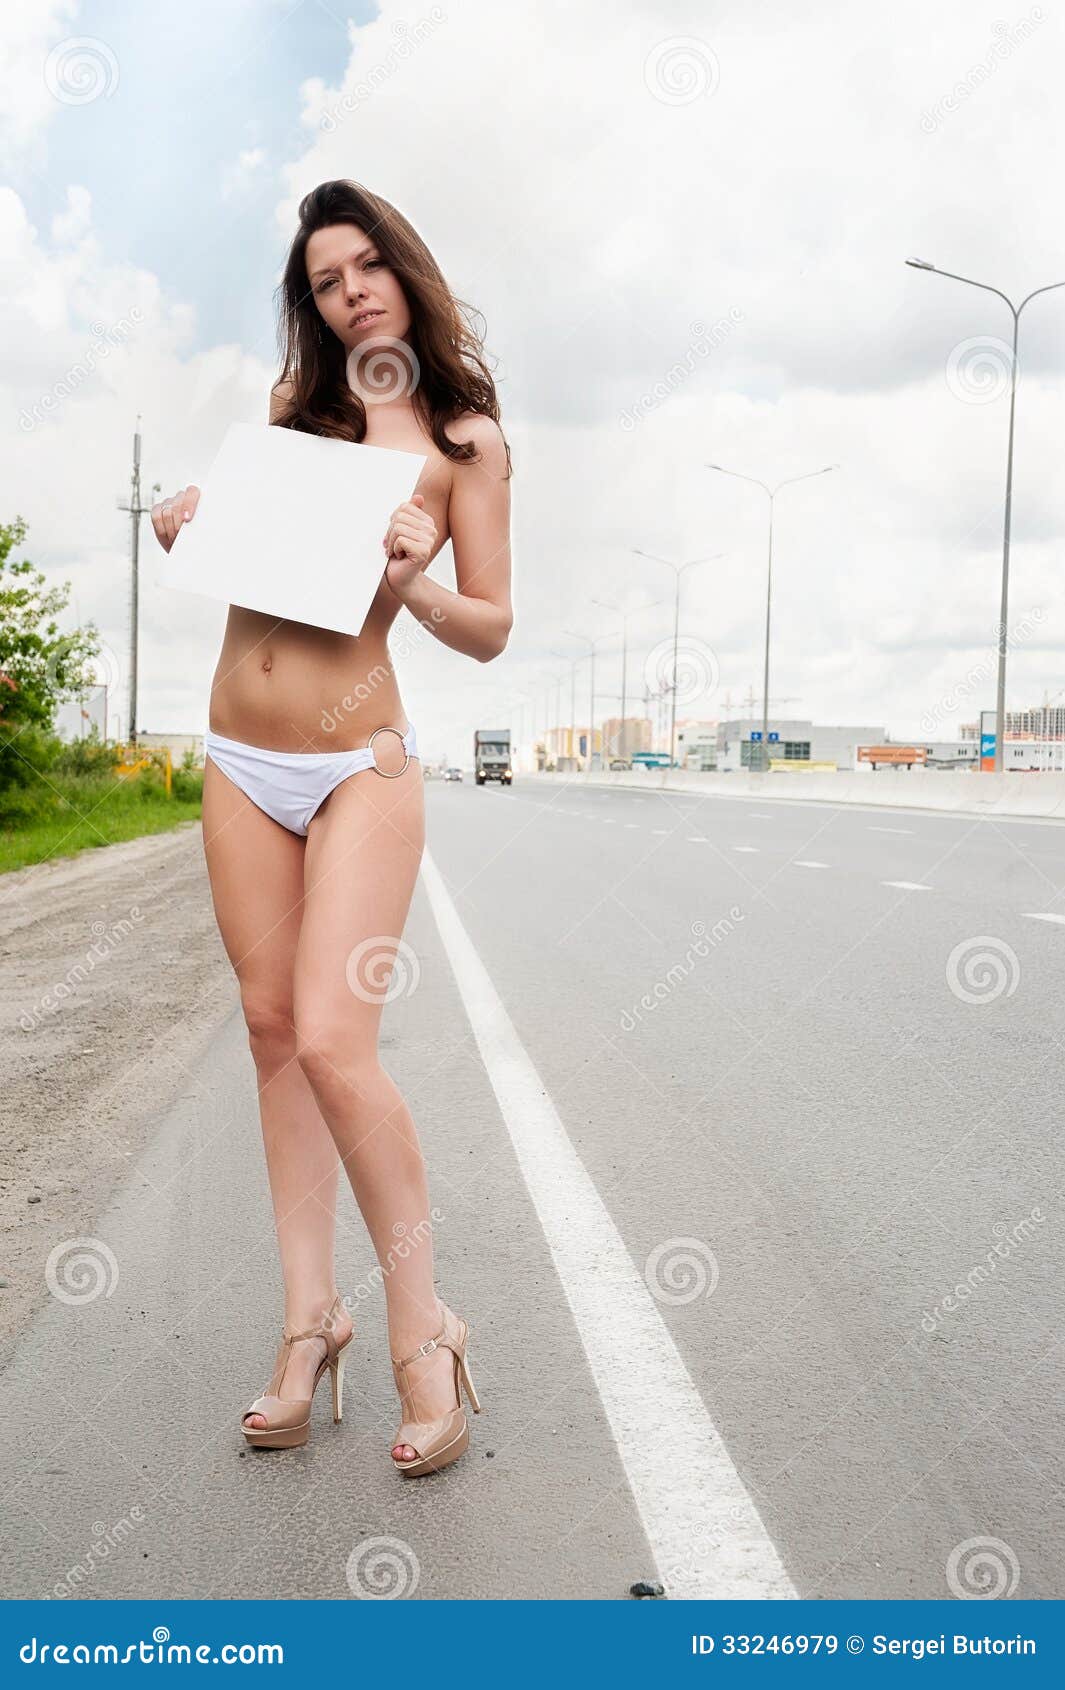 Nude Women On Road